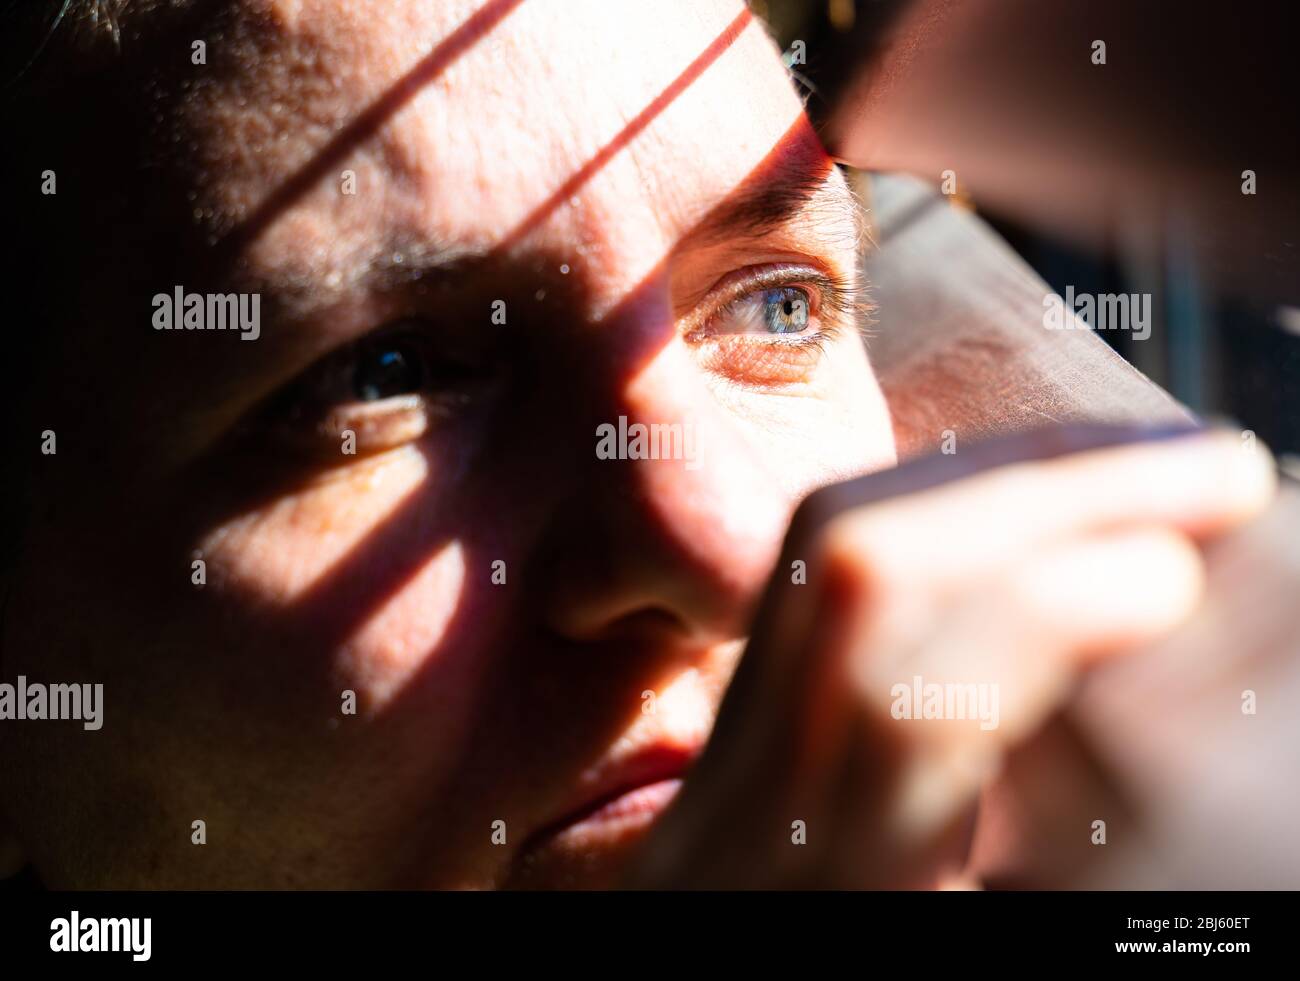 Erwachsene Frau mit blauen Augen, die einen hölzernen Vorhang mit ihren Fingern öffnet, um durch das Fenster zu schauen, während das Sonnenlicht Sonne und Schatten auf ihrem Gesicht erzeugt Stockfoto